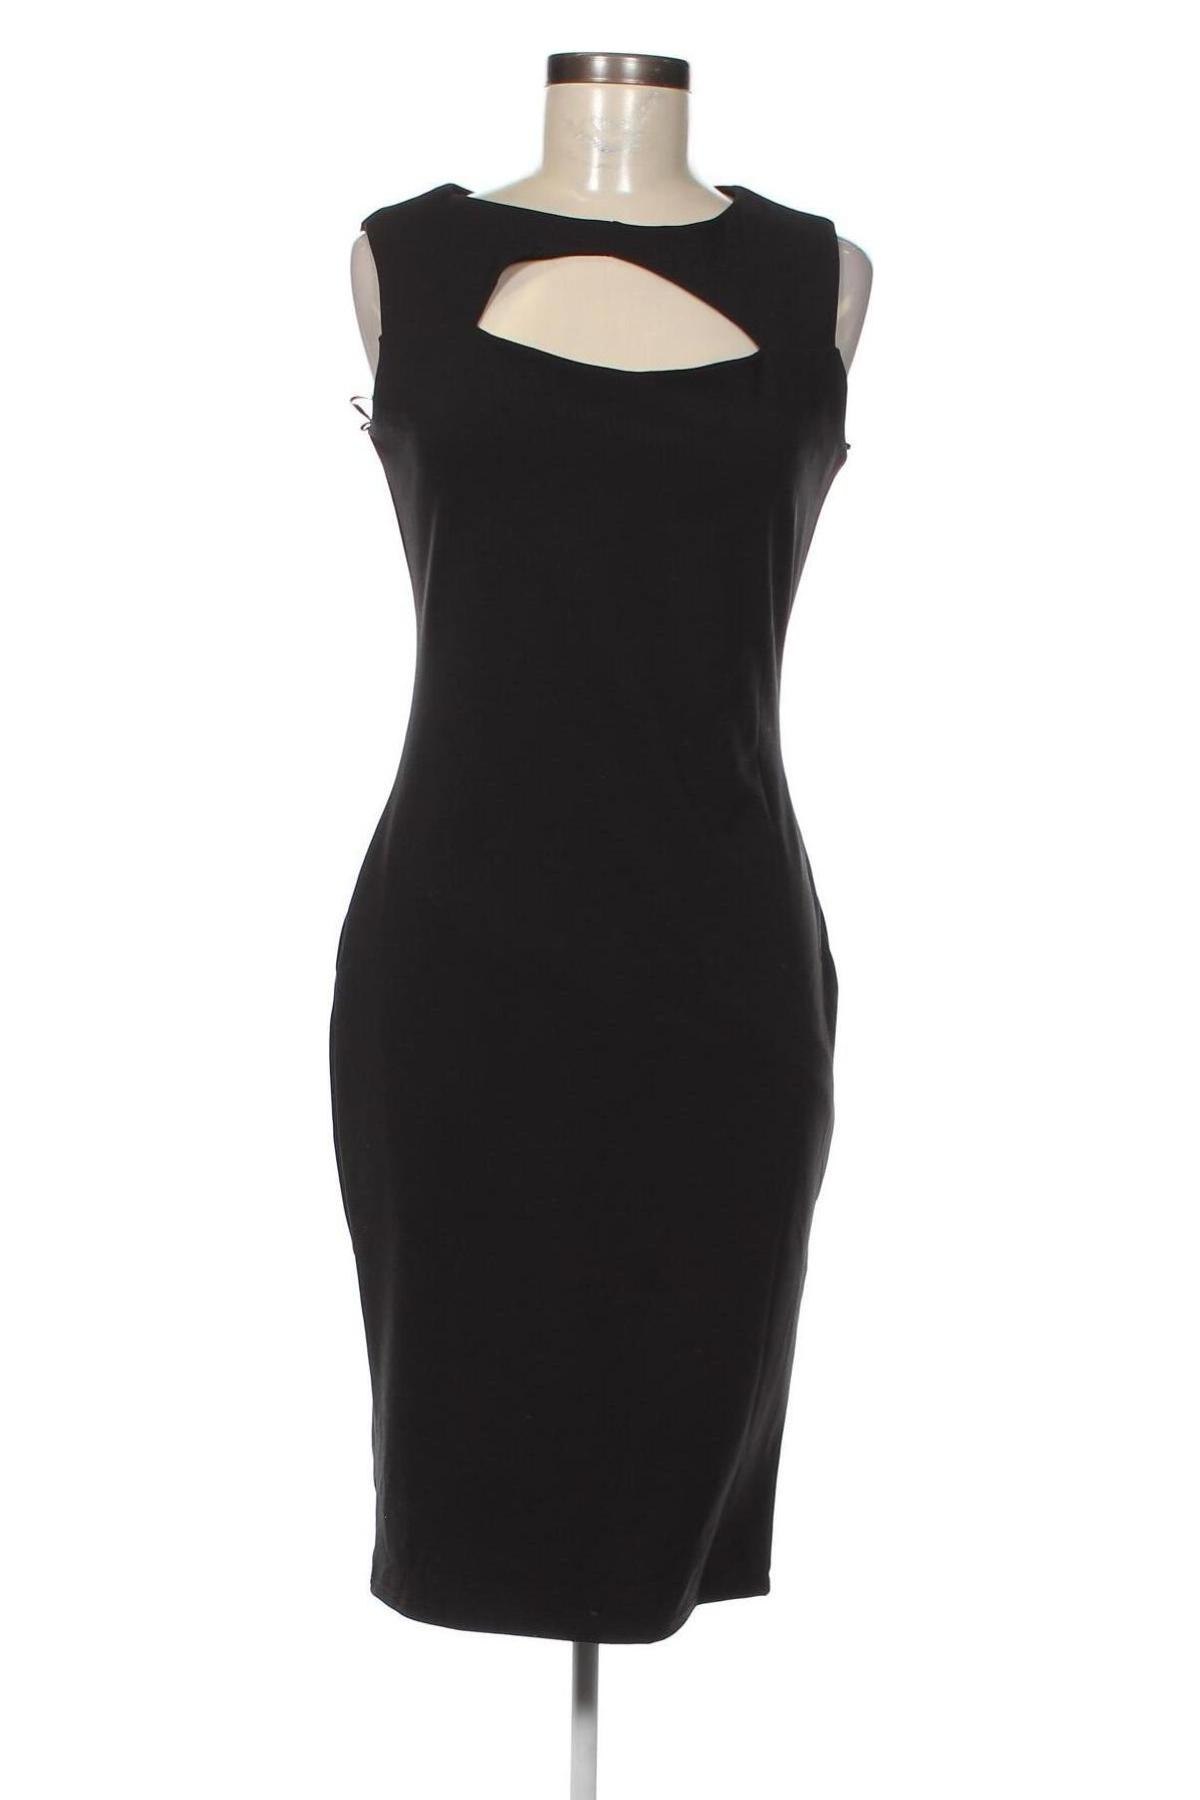 Φόρεμα Jane Norman, Μέγεθος M, Χρώμα Μαύρο, Τιμή 38,35 €